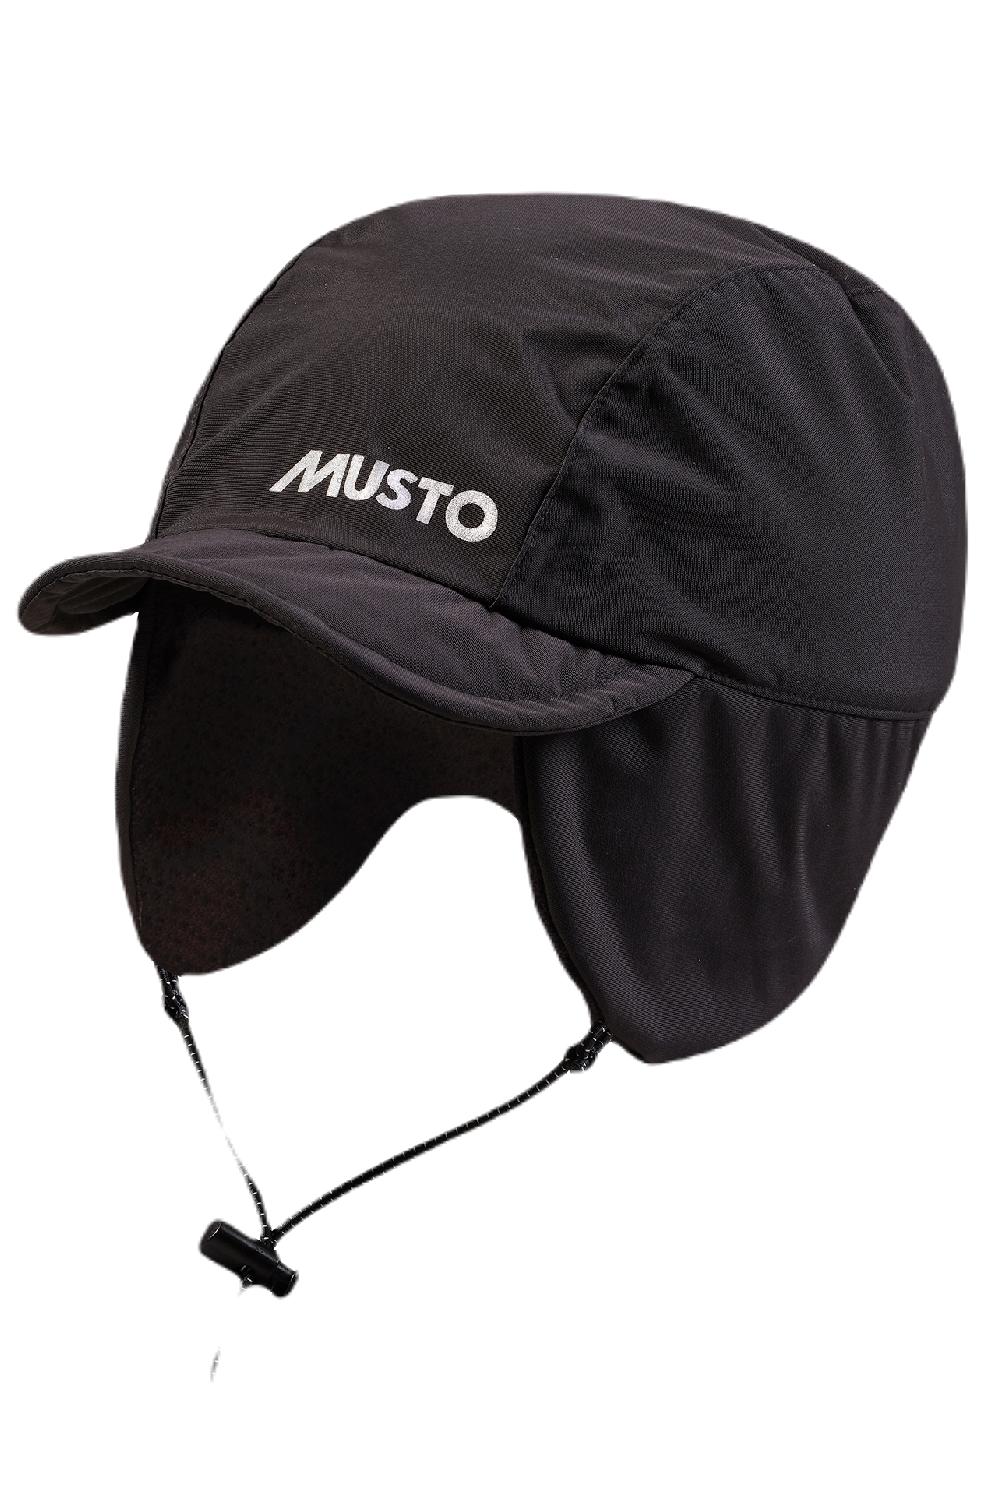 Musto MPX Fleece Lined Waterproof Cap